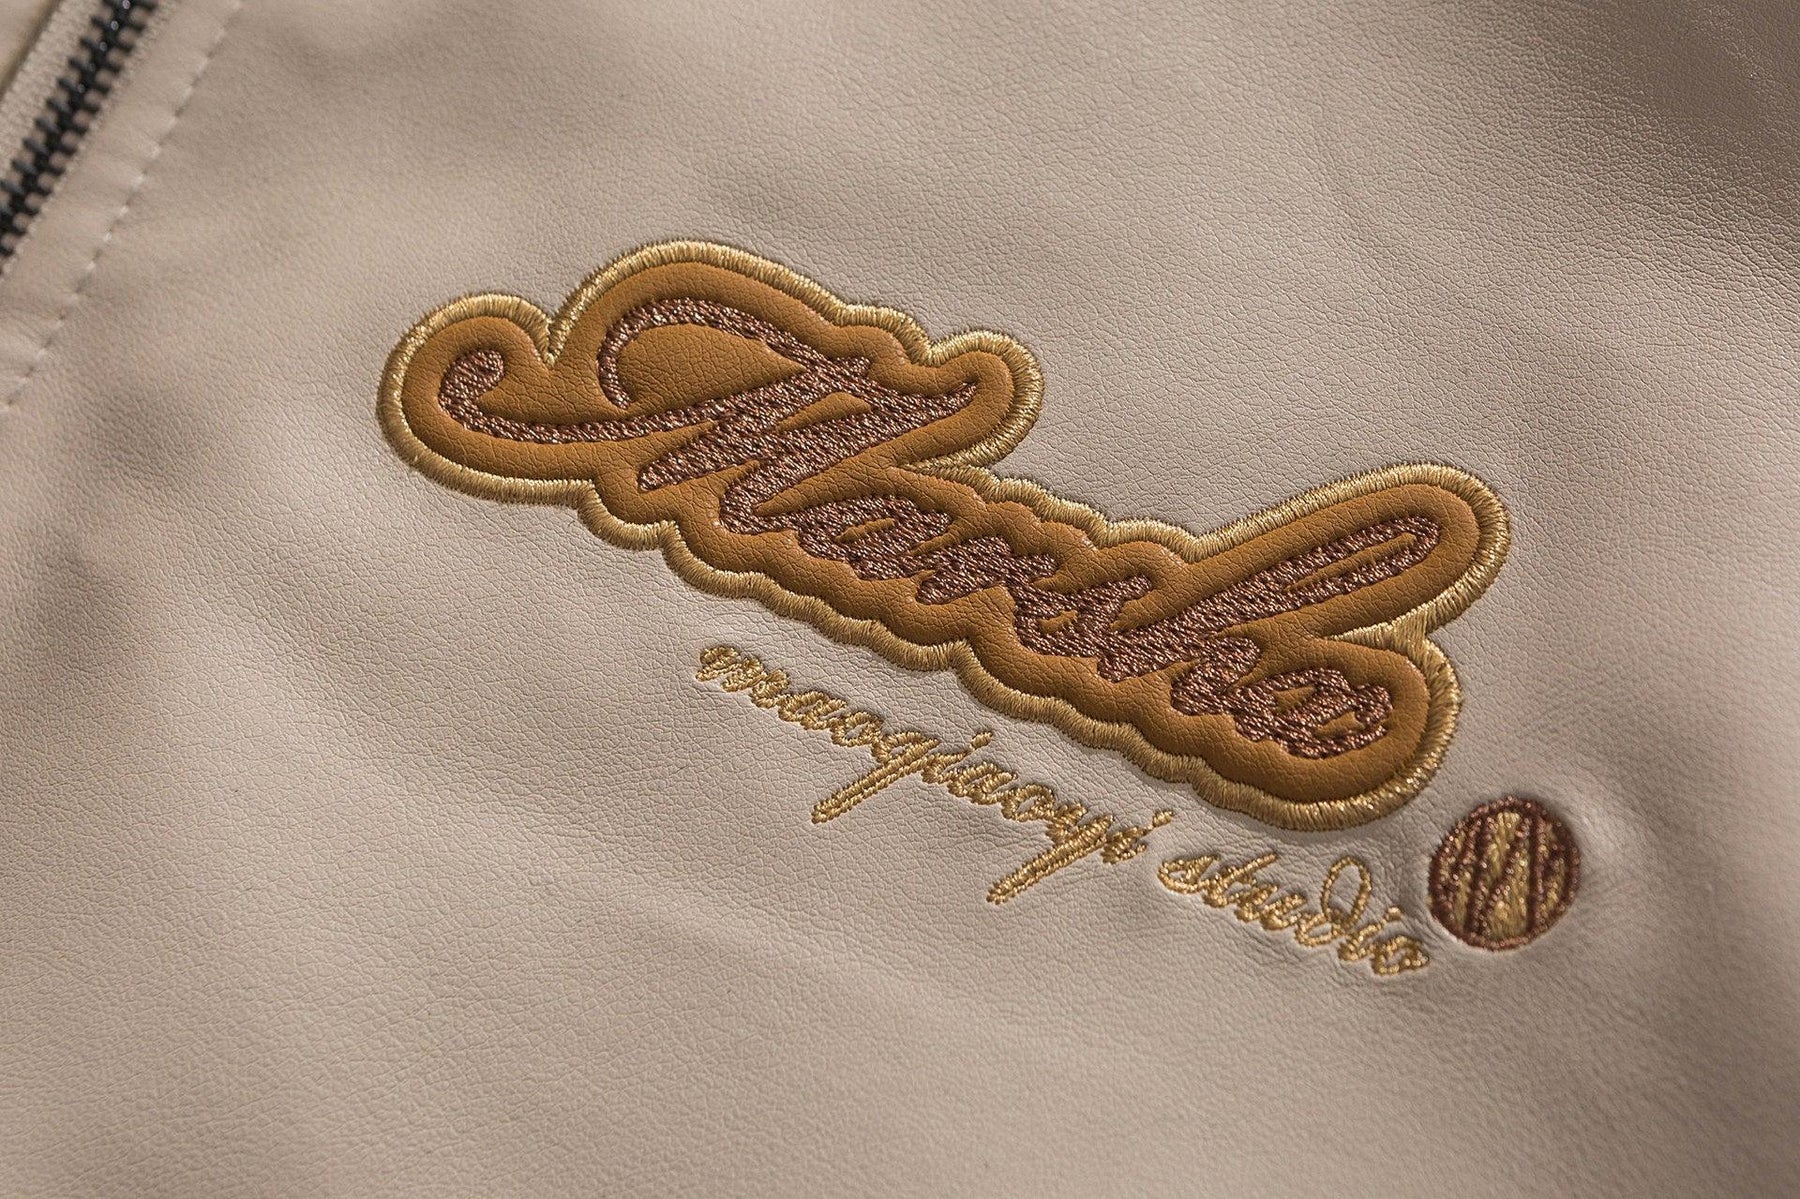 LUXENFY™ - Khaki Marsha Jacket luxenfy.com